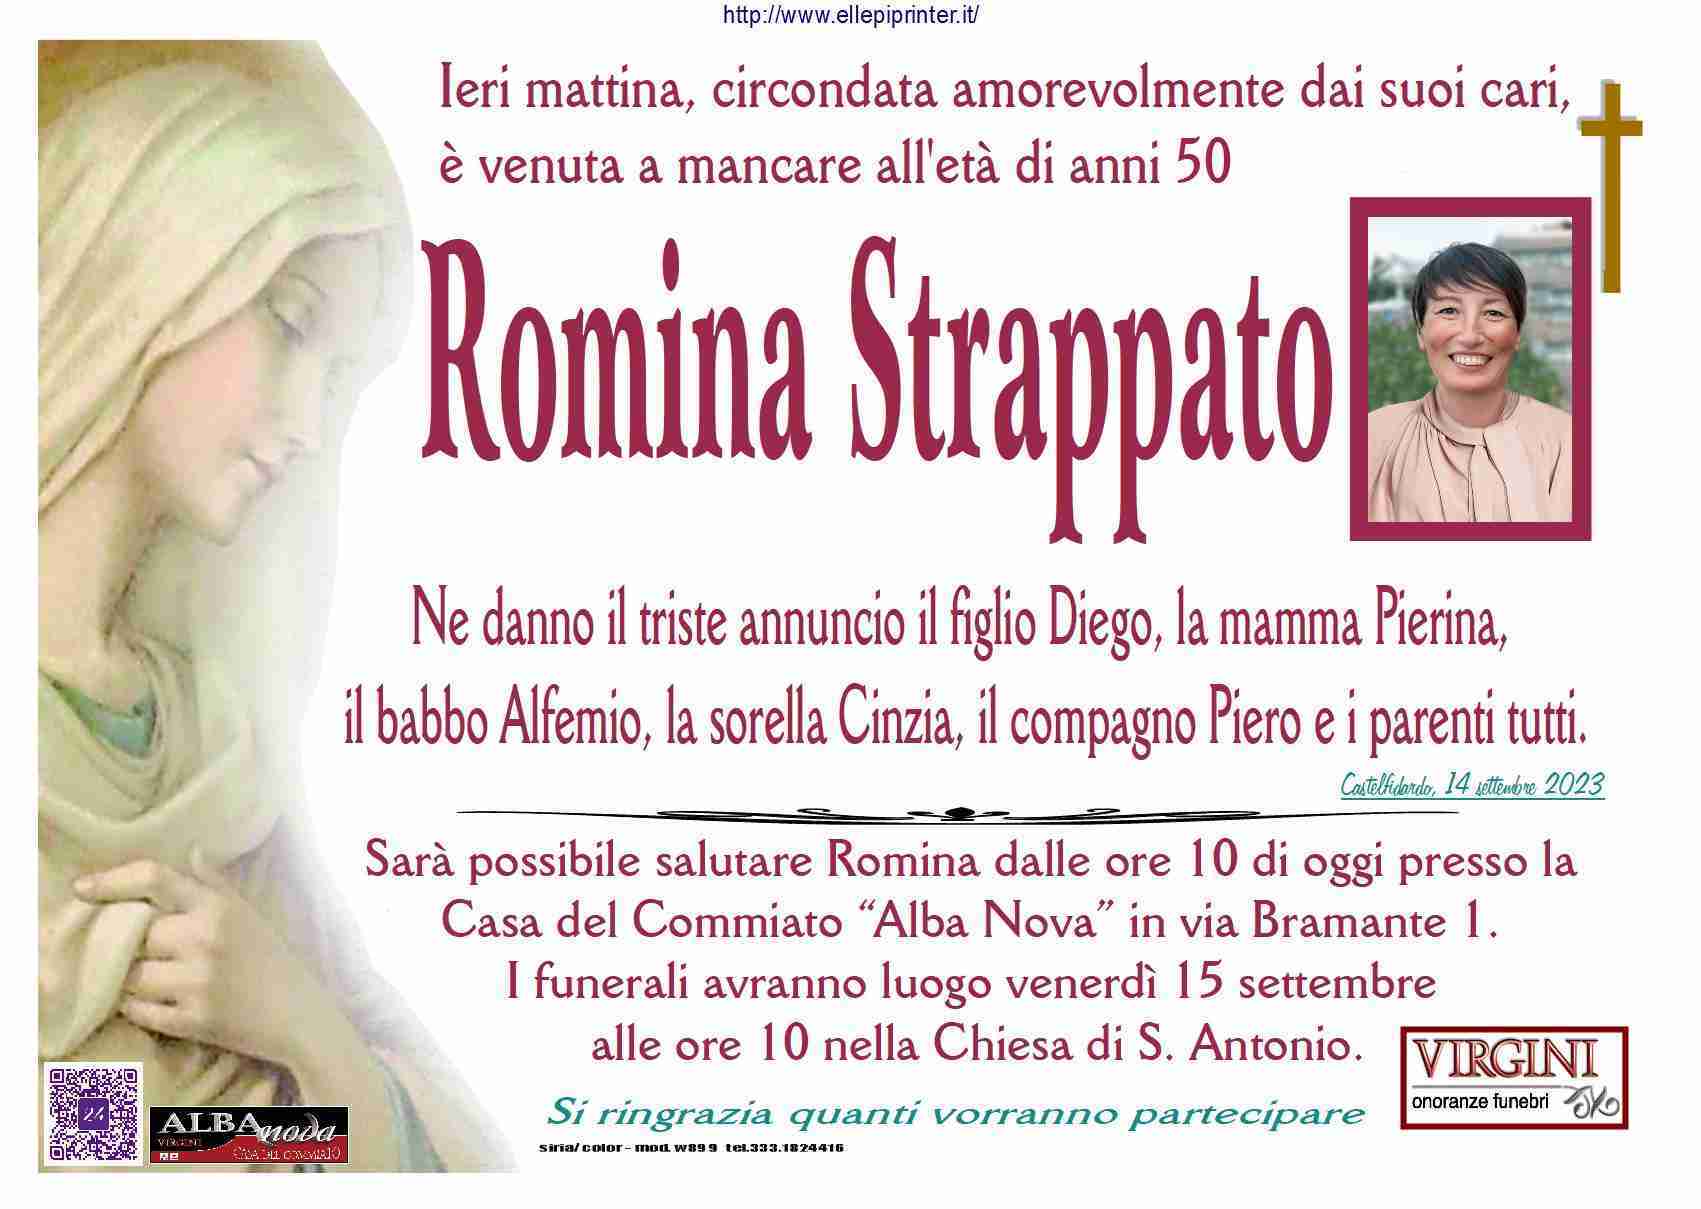 Romina Strappato